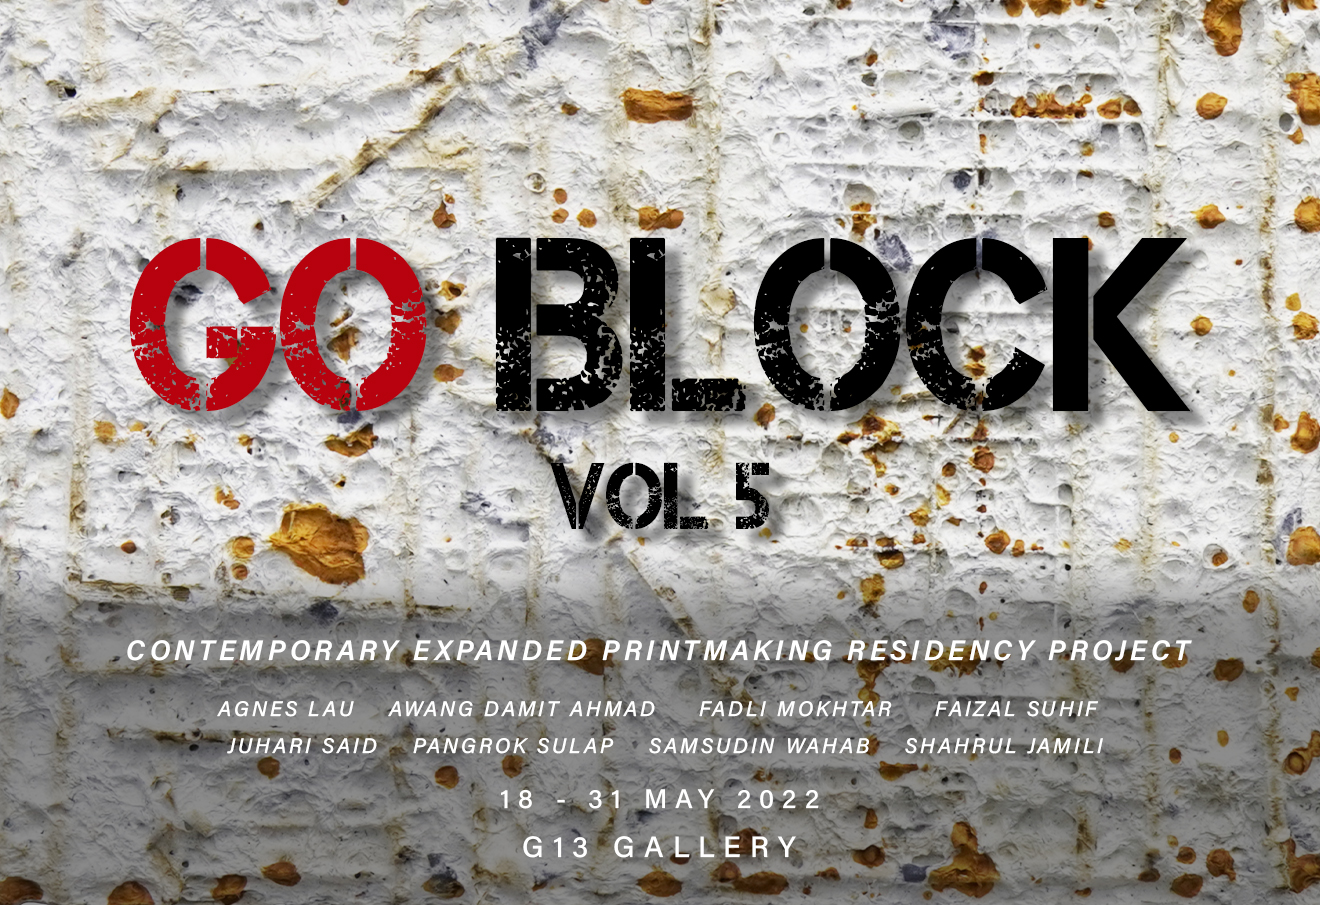 Go Block Vol. 5